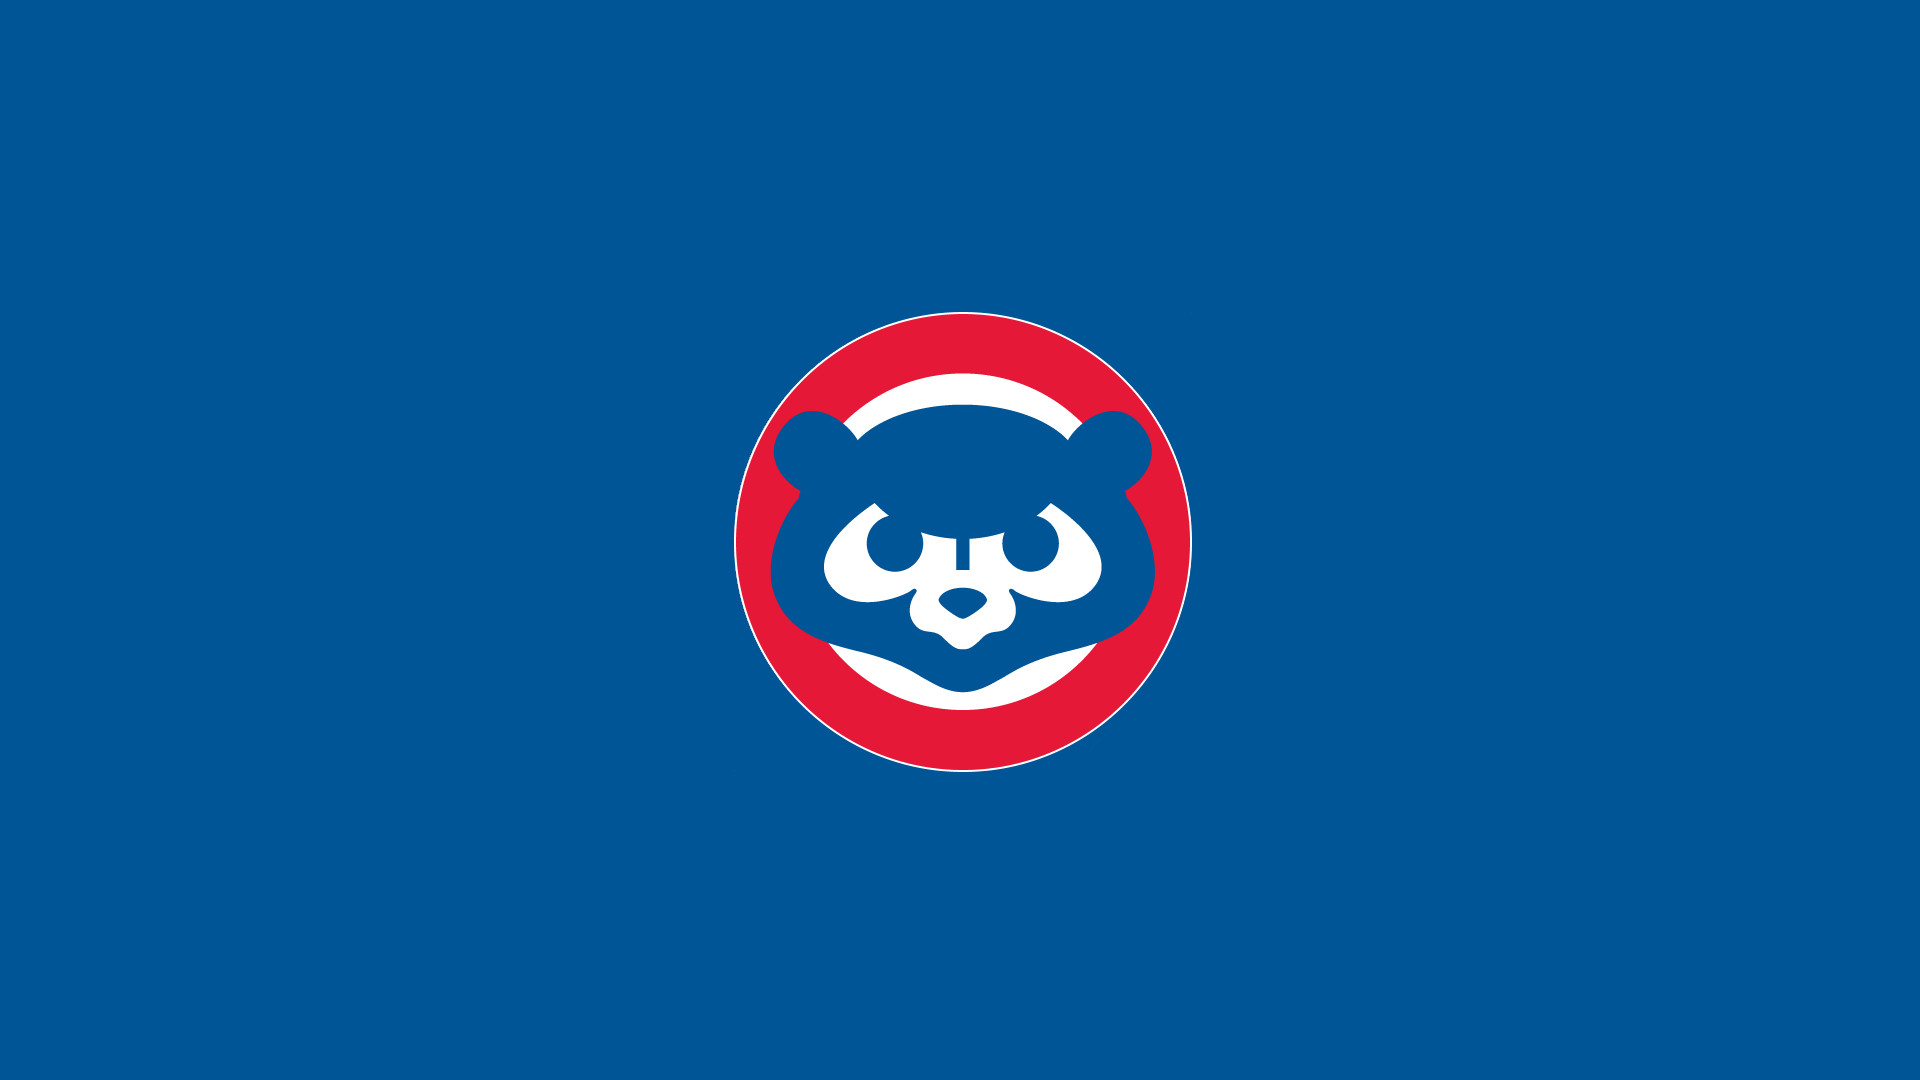 1920x1080 Die besten 20+ Cubs wallpaper Ideen auf Pinterest | Chicago Cubs  Hintergrundbild, Chicago cubs logo und Chicago cubs